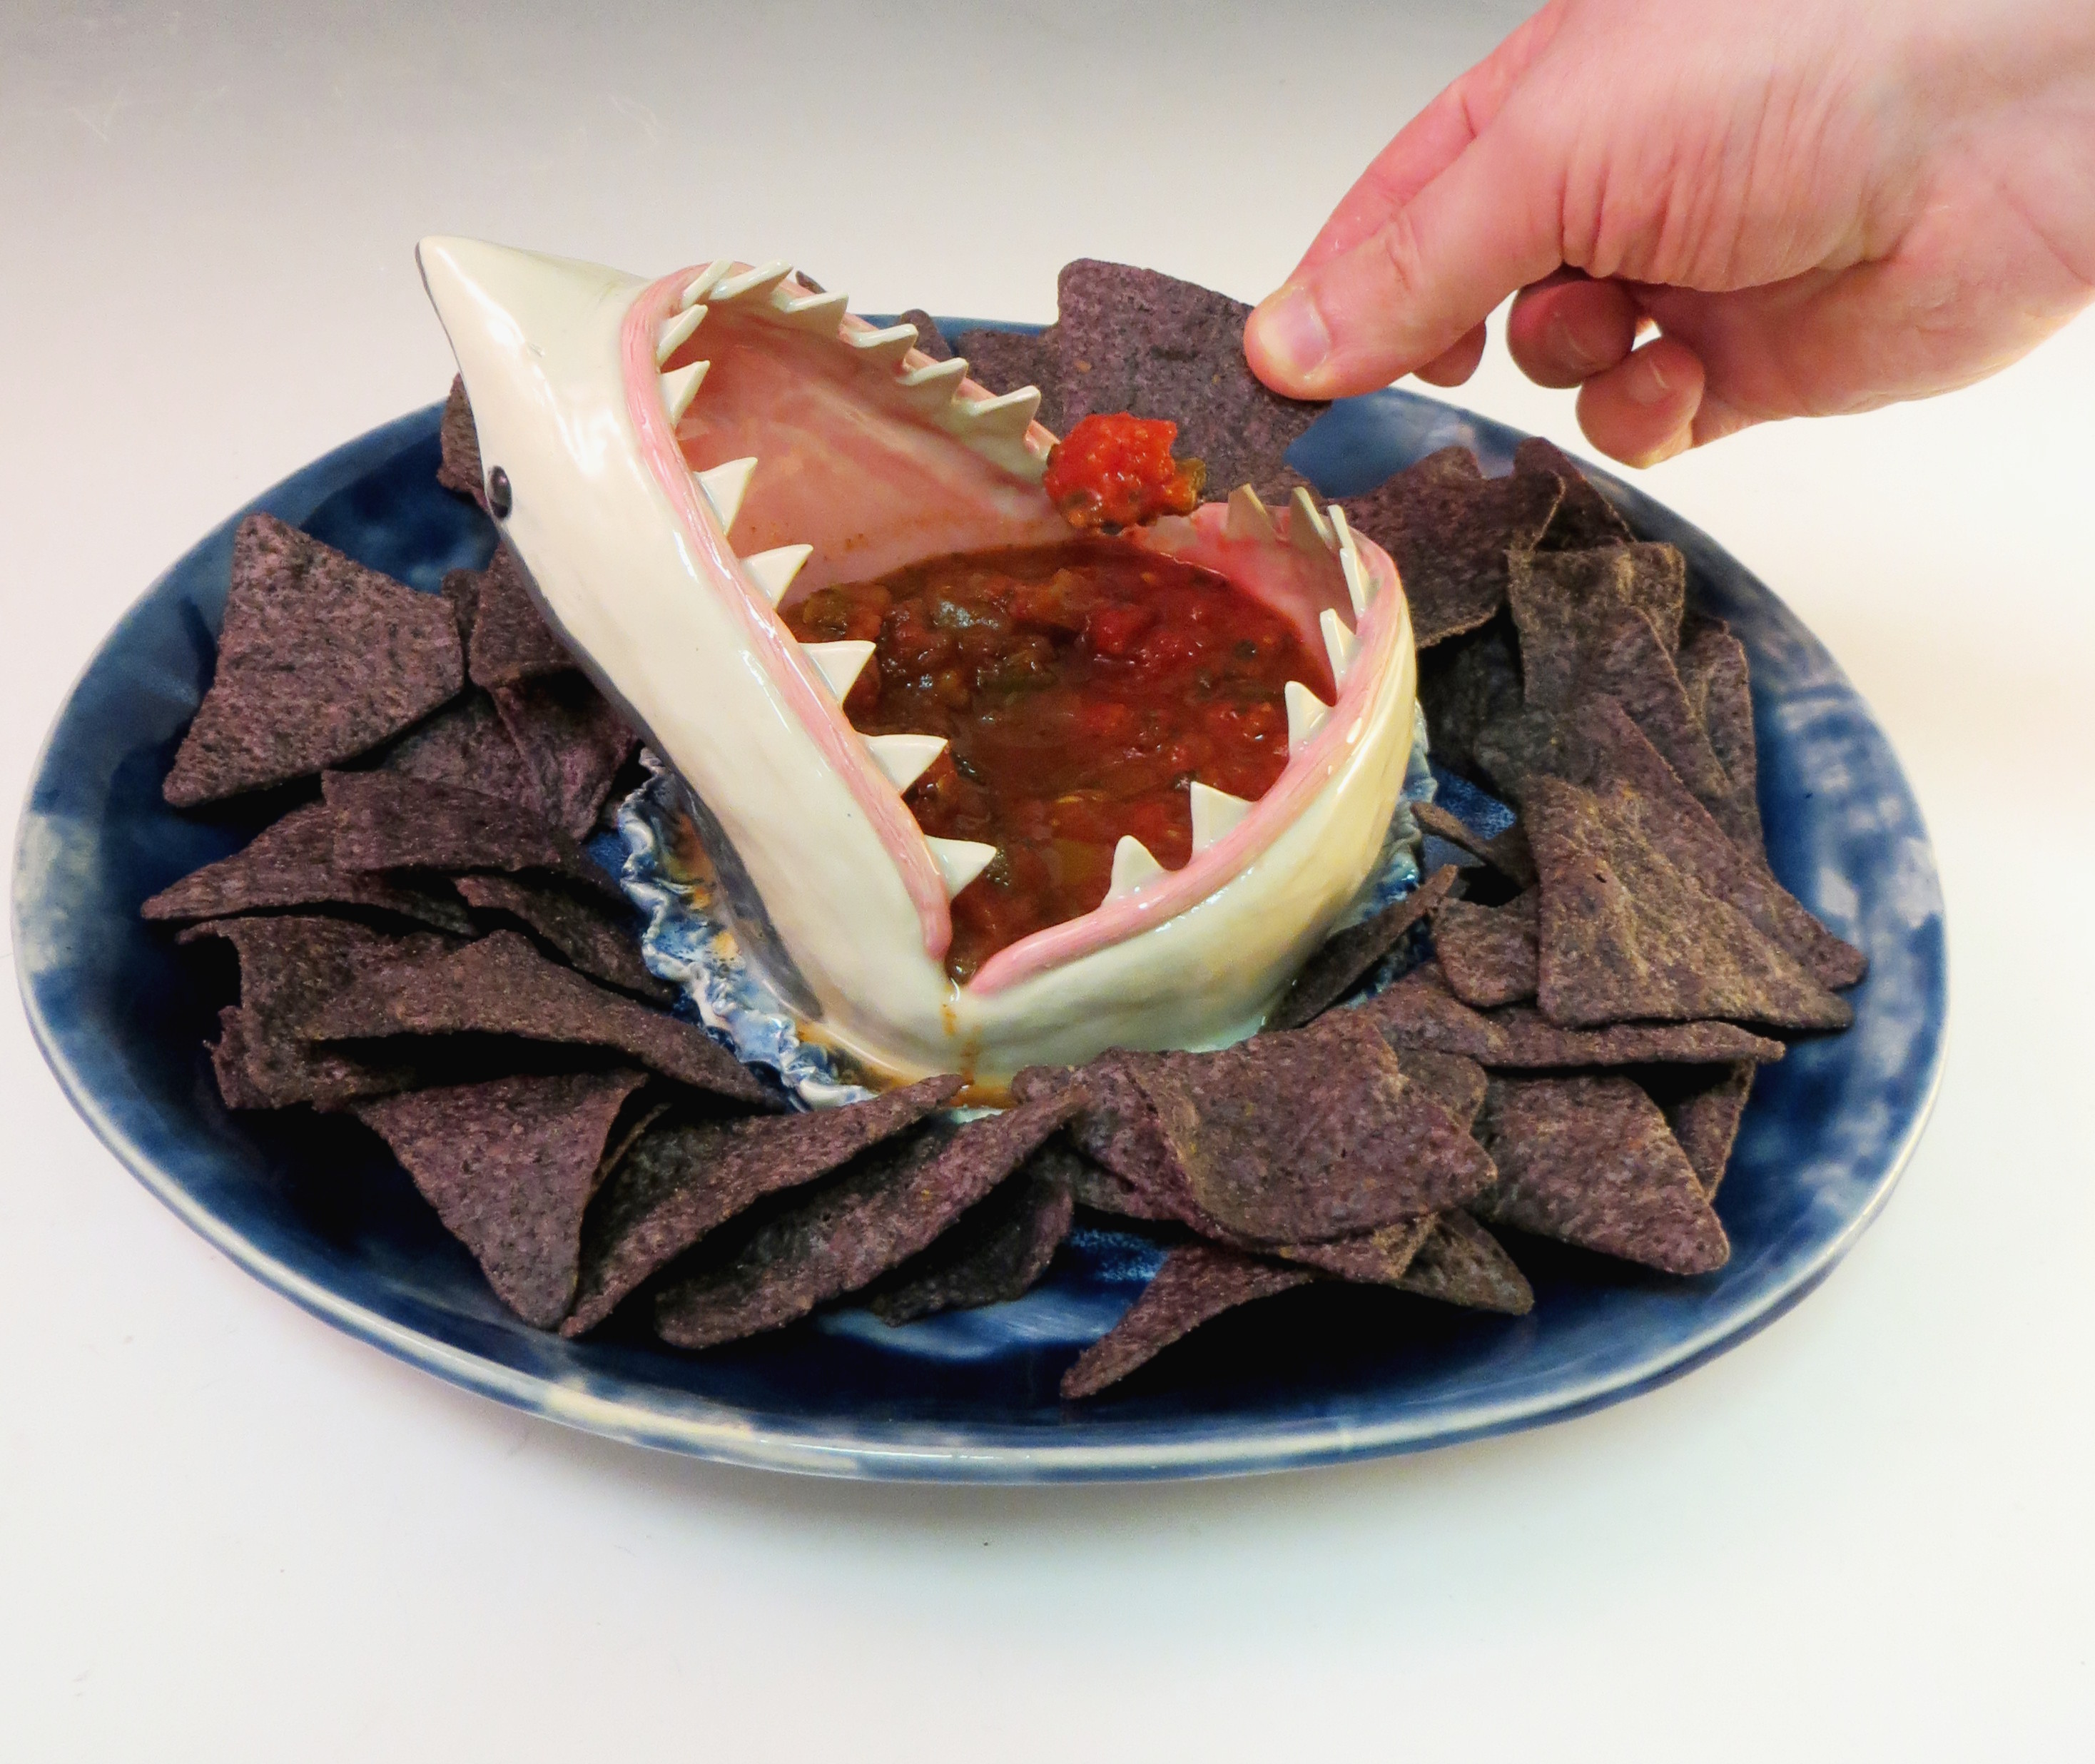 shark-salsa-plate1.jpg